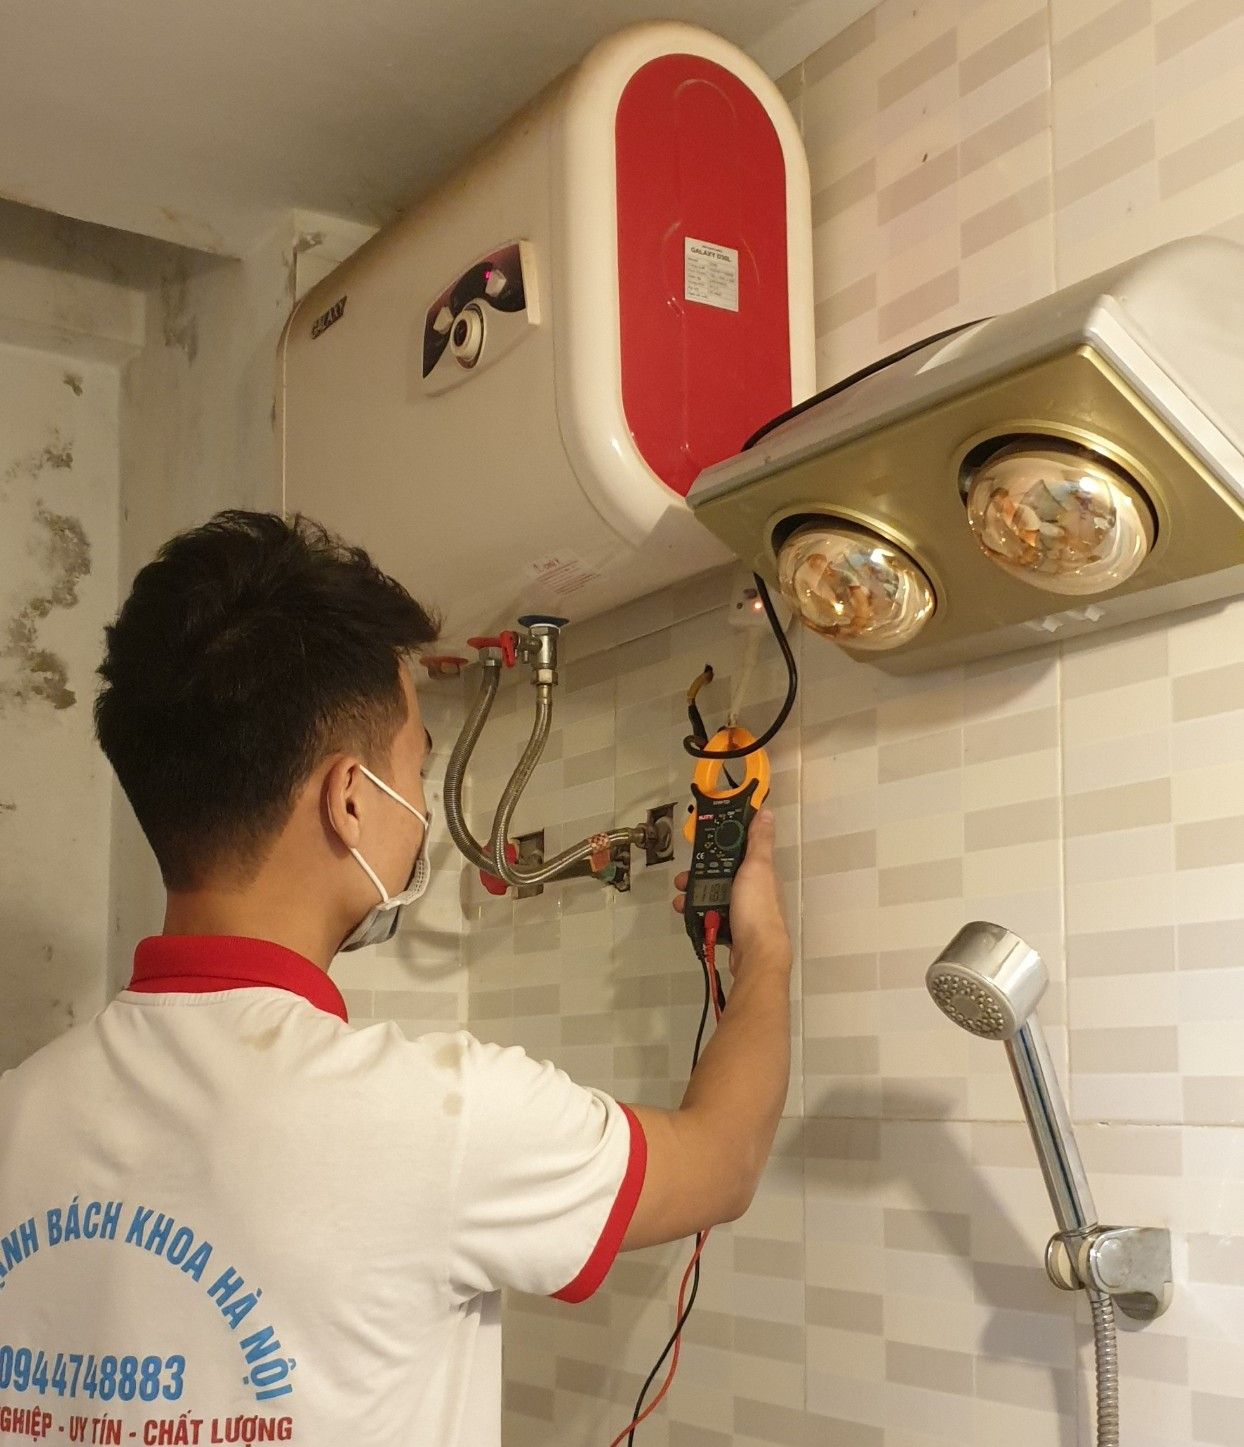 Sửa bình nóng lạnh giá rẻ tại Hà Nội: Giá vật tư, chi phí sửa chữa